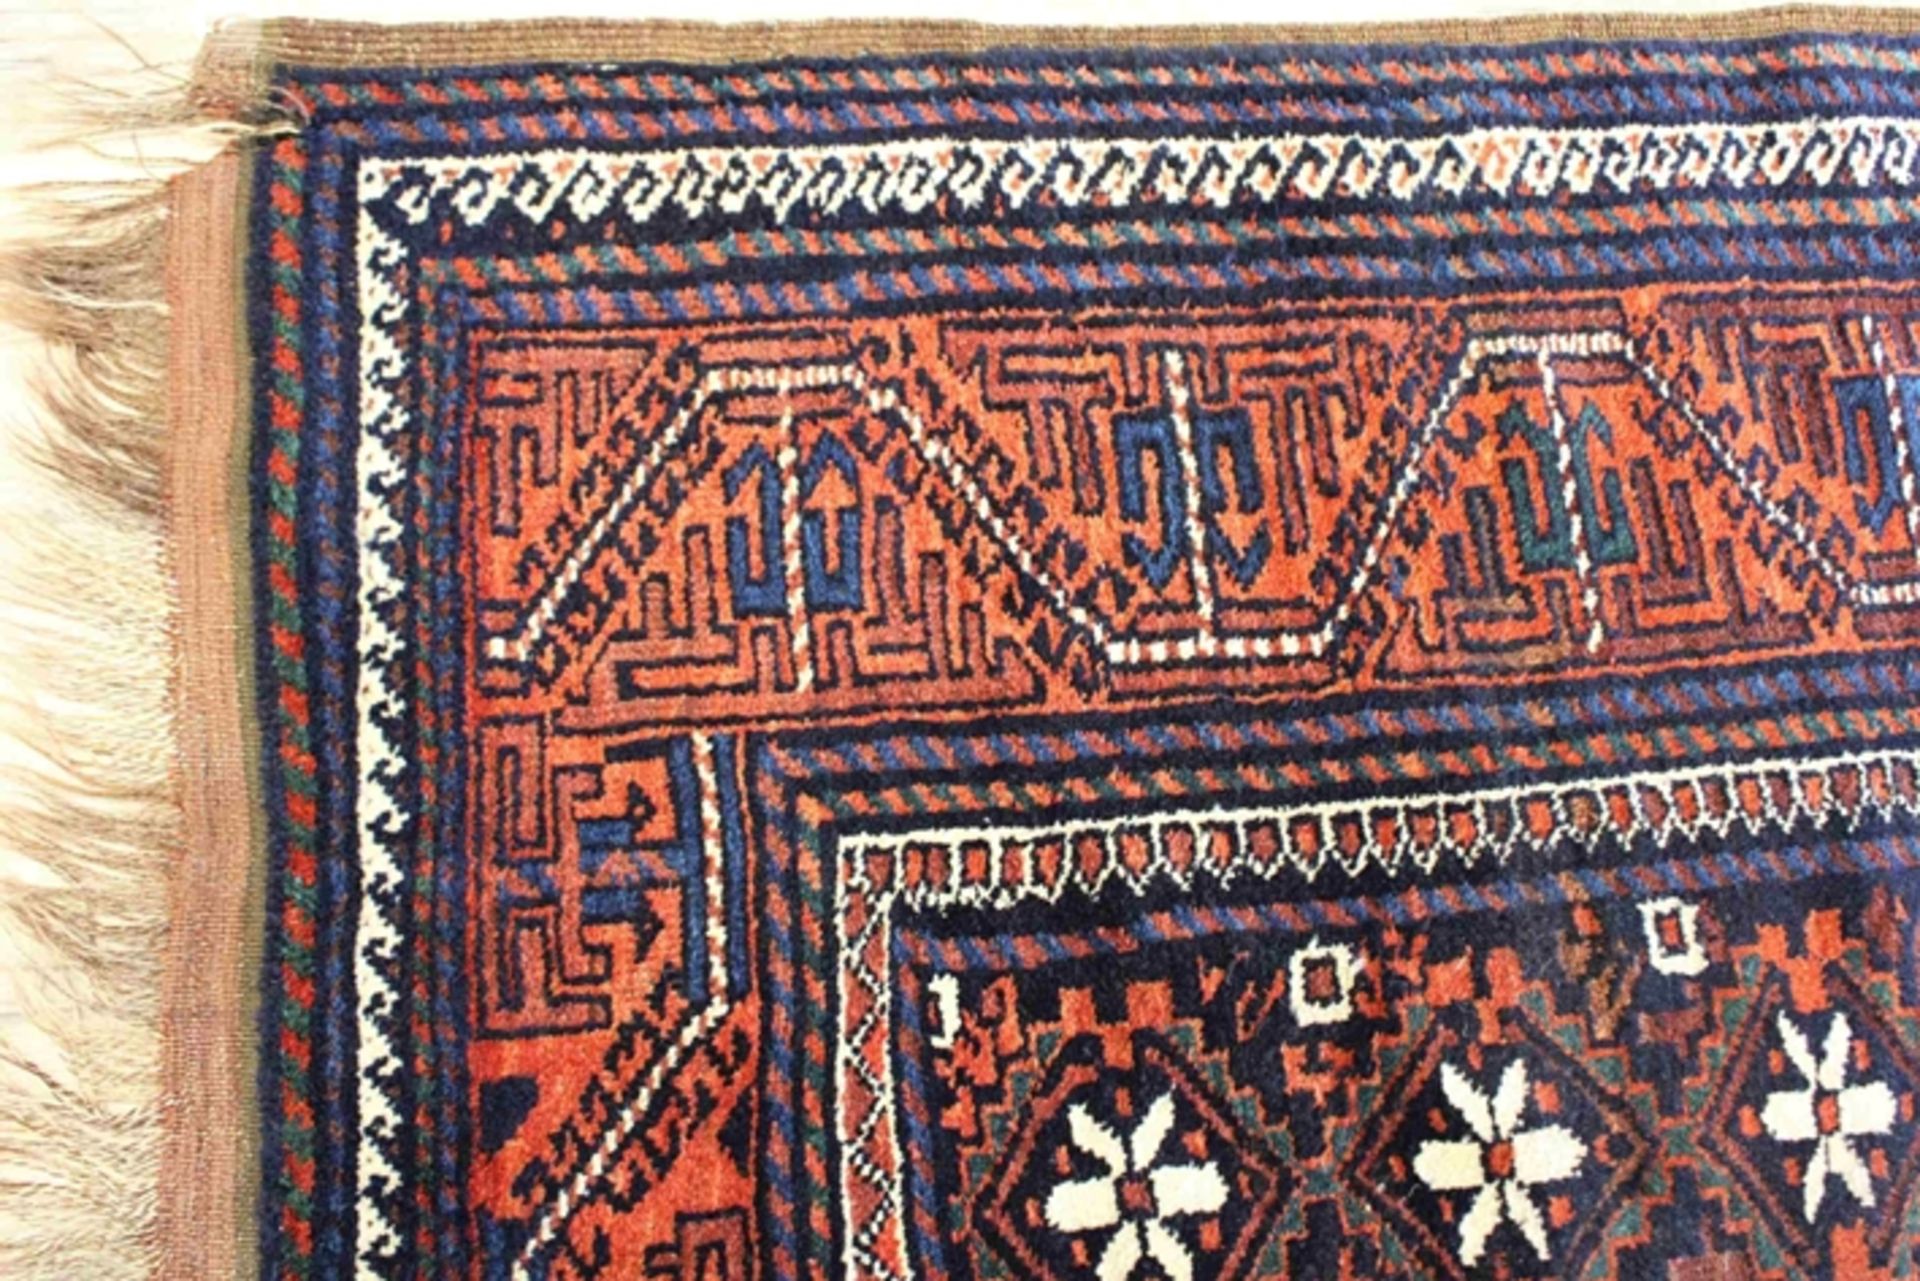 Belutsch Teppich, Maße: 237 x 141 cm. Guter Zustand, Abnutzungsspuren an den Kanten. - Bild 2 aus 3